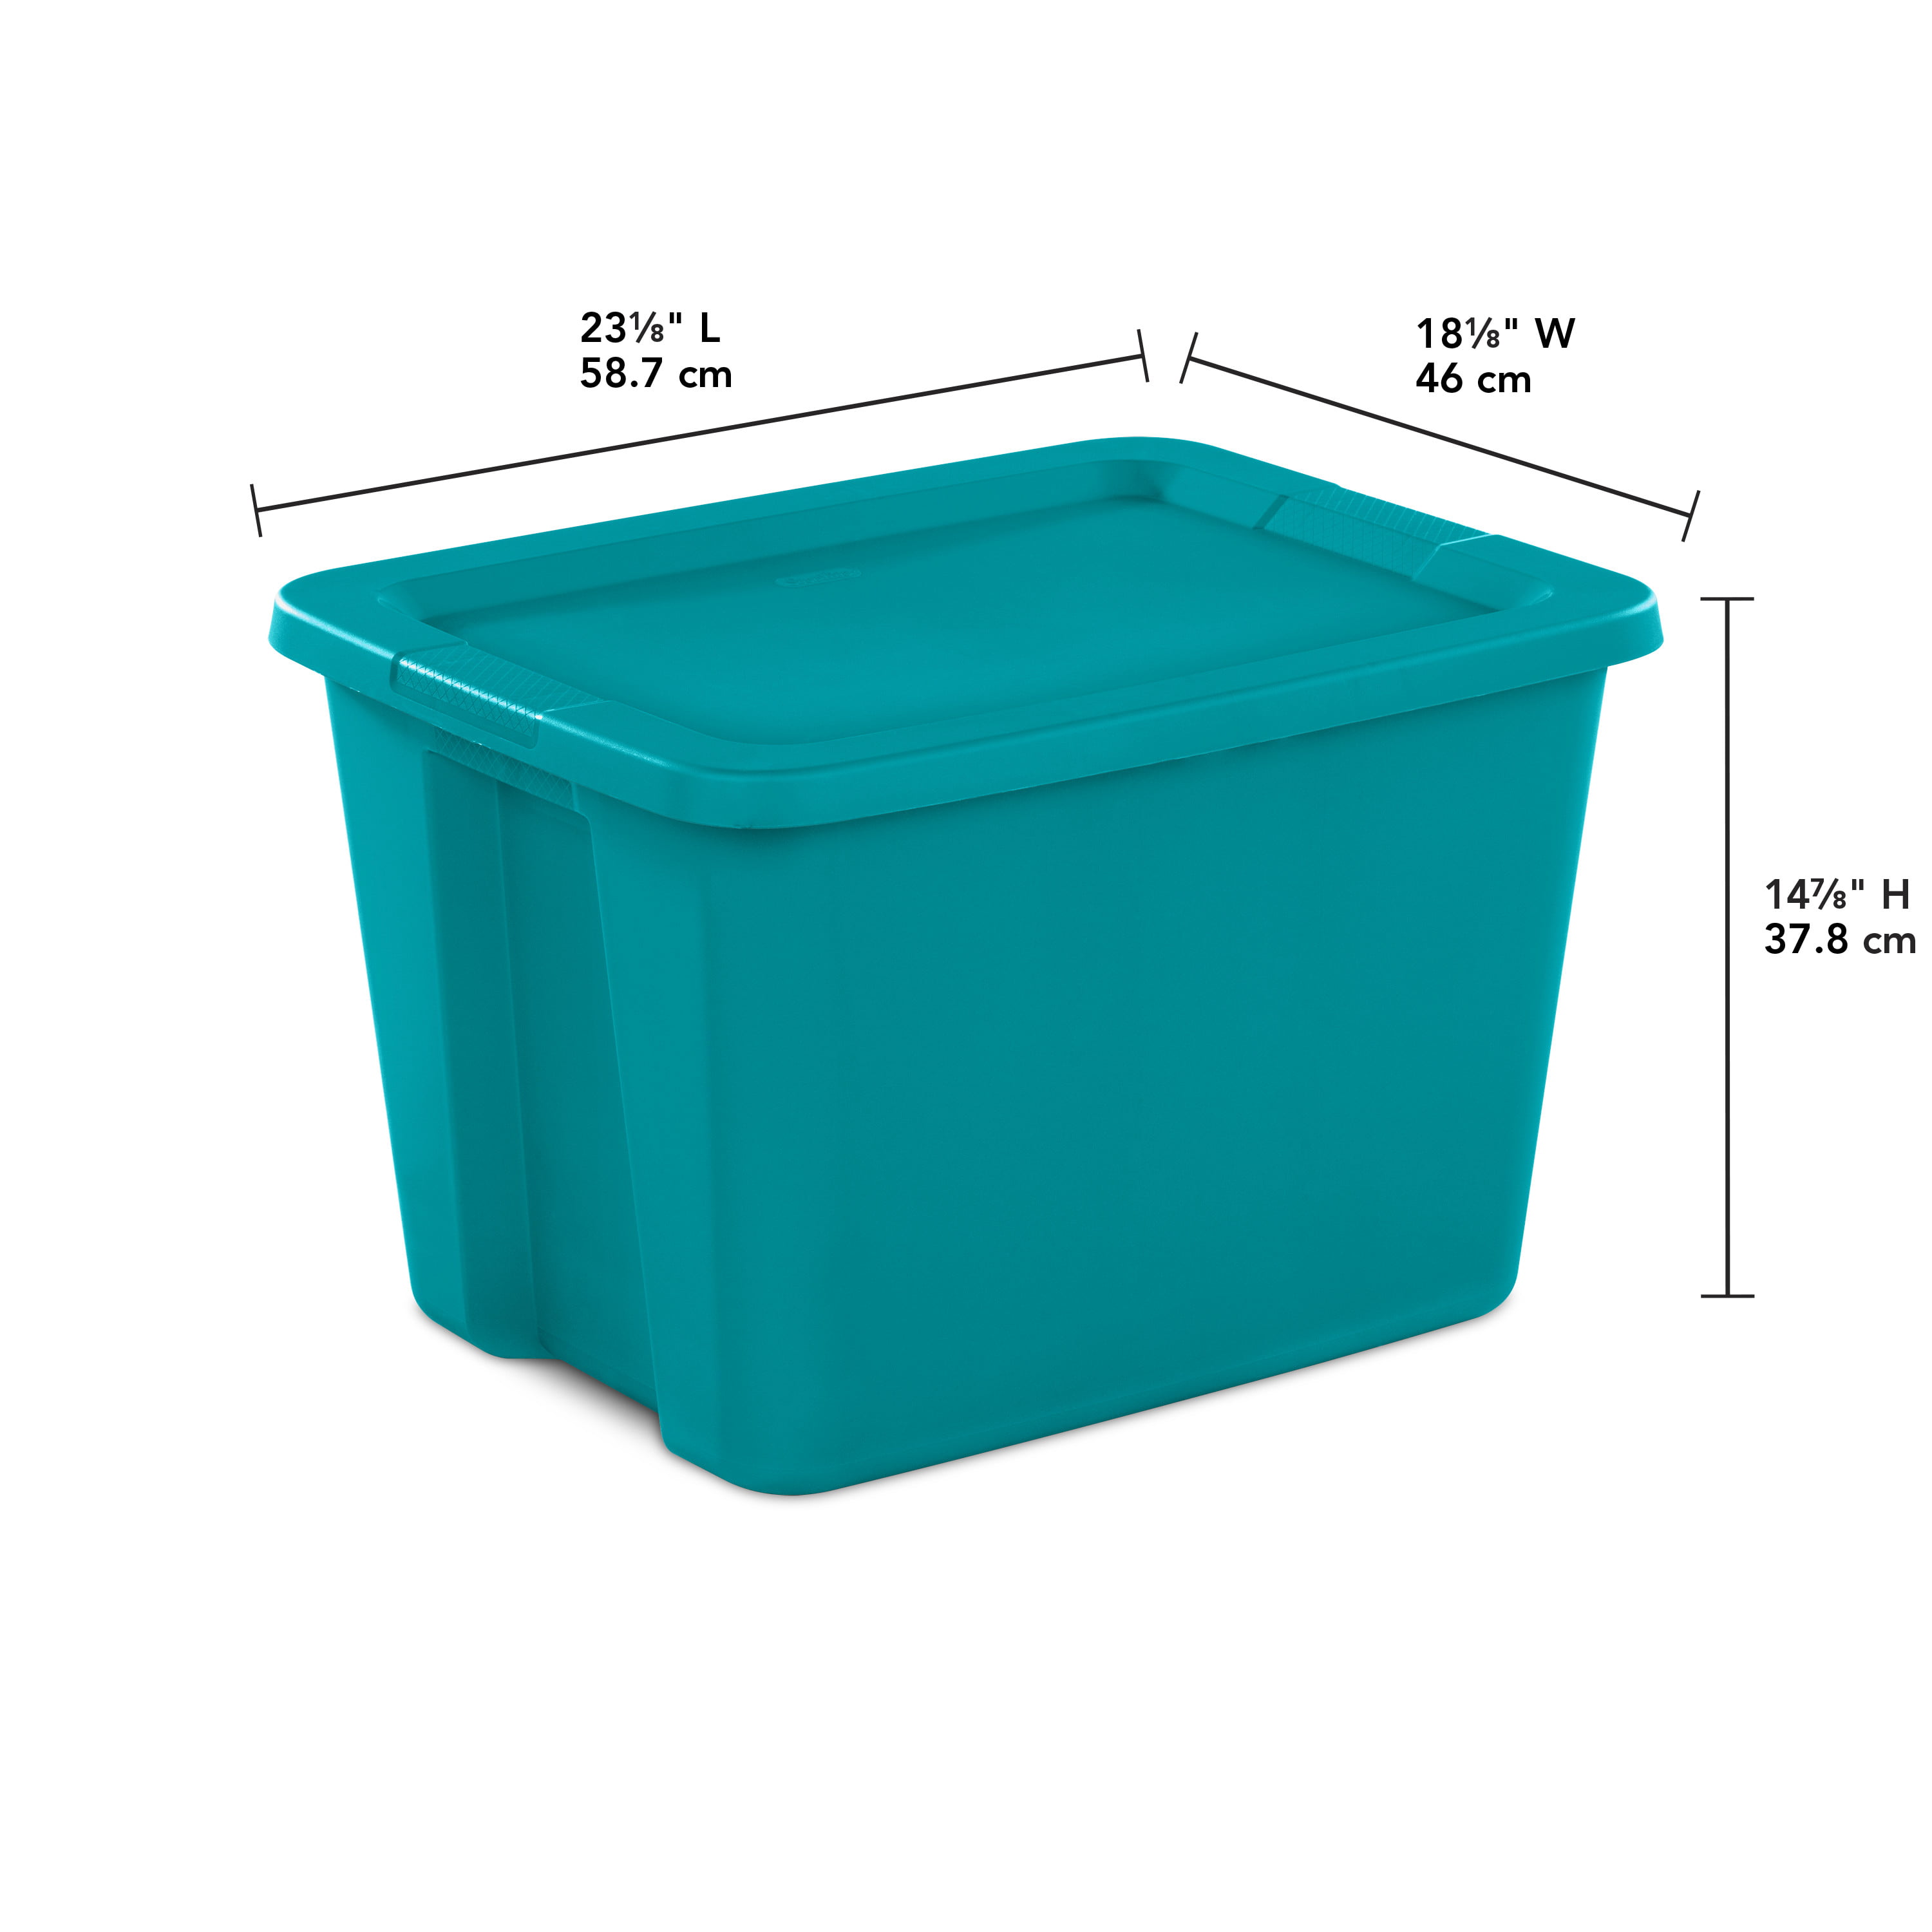 Sterilite 30 Gallon Tote Box -Mainstays Blue, Case of 6 